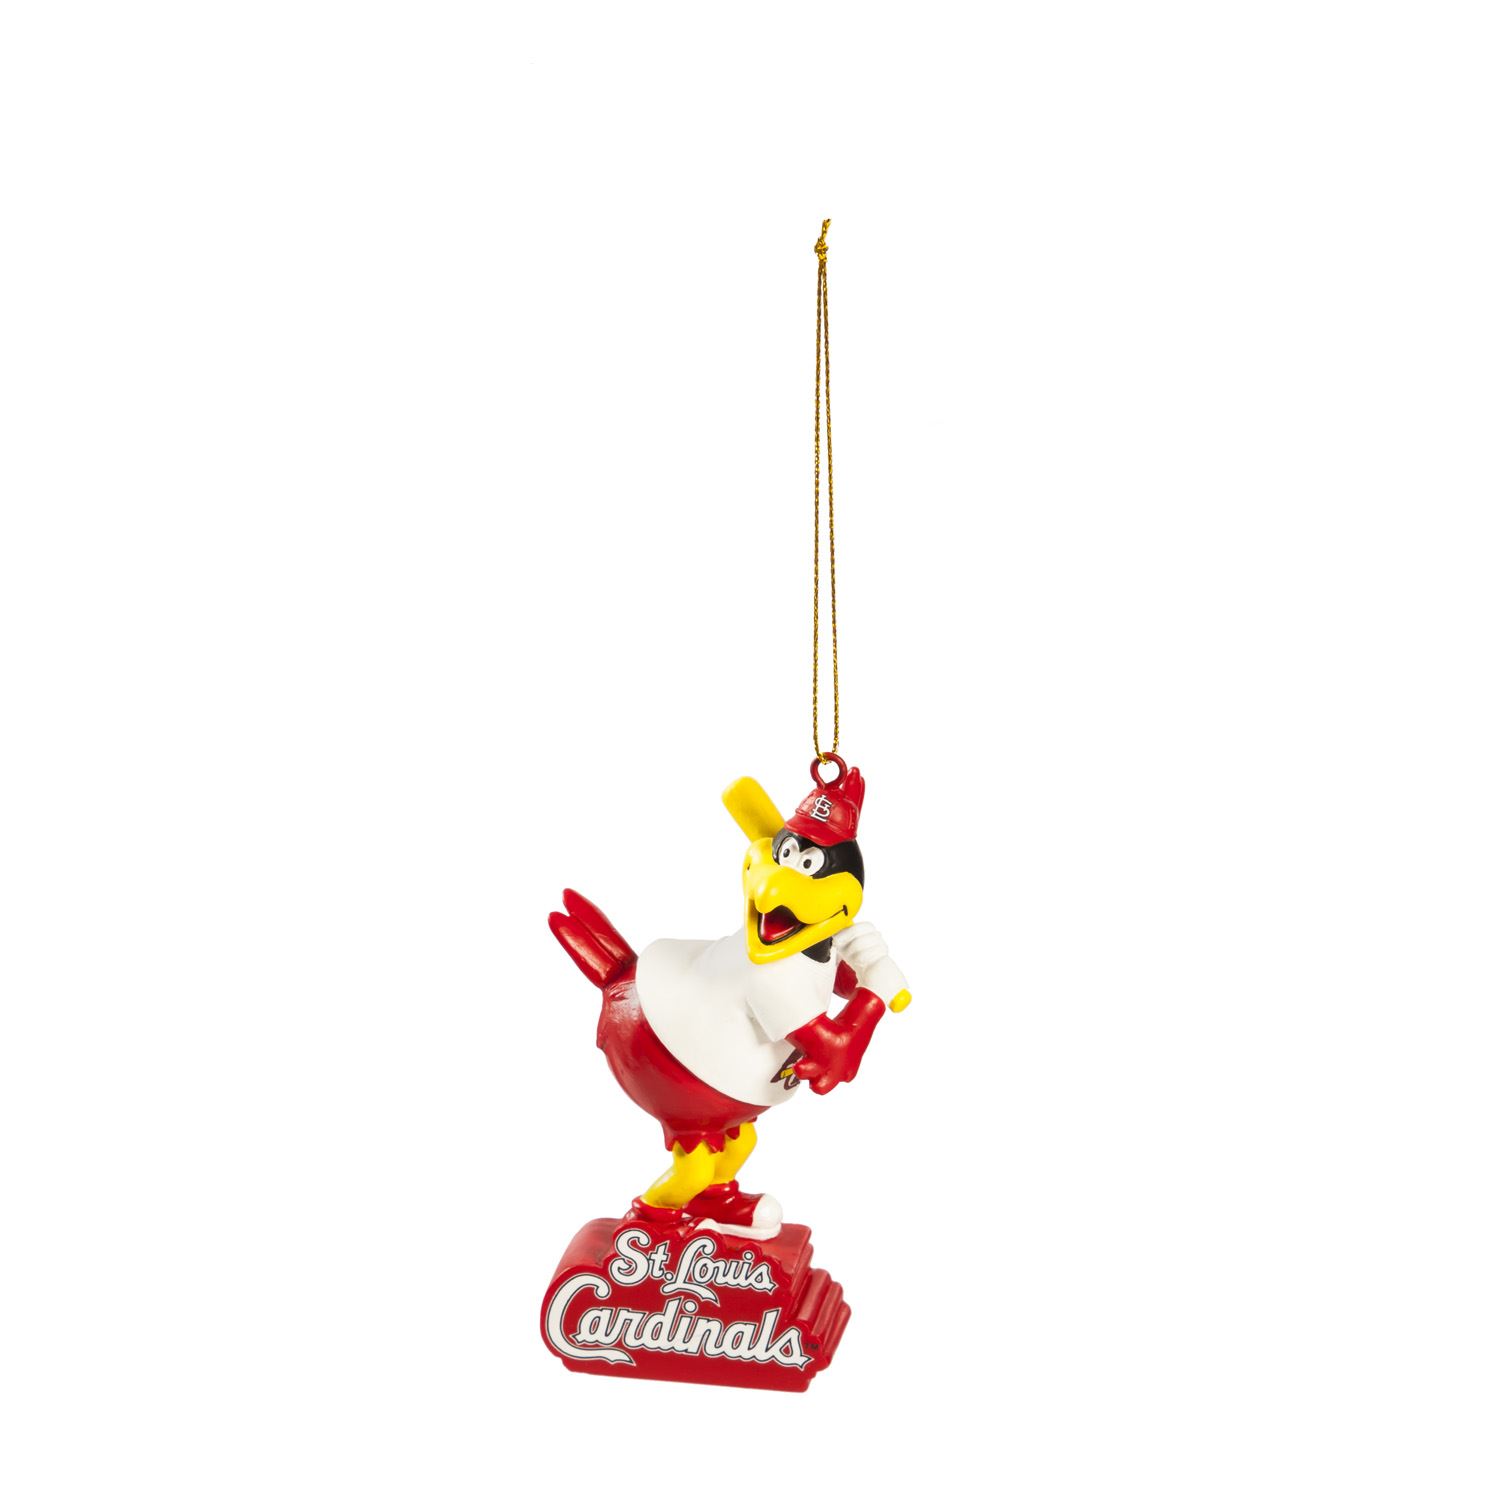 St. Louis Cardinals Mascot Fredbird Ornament